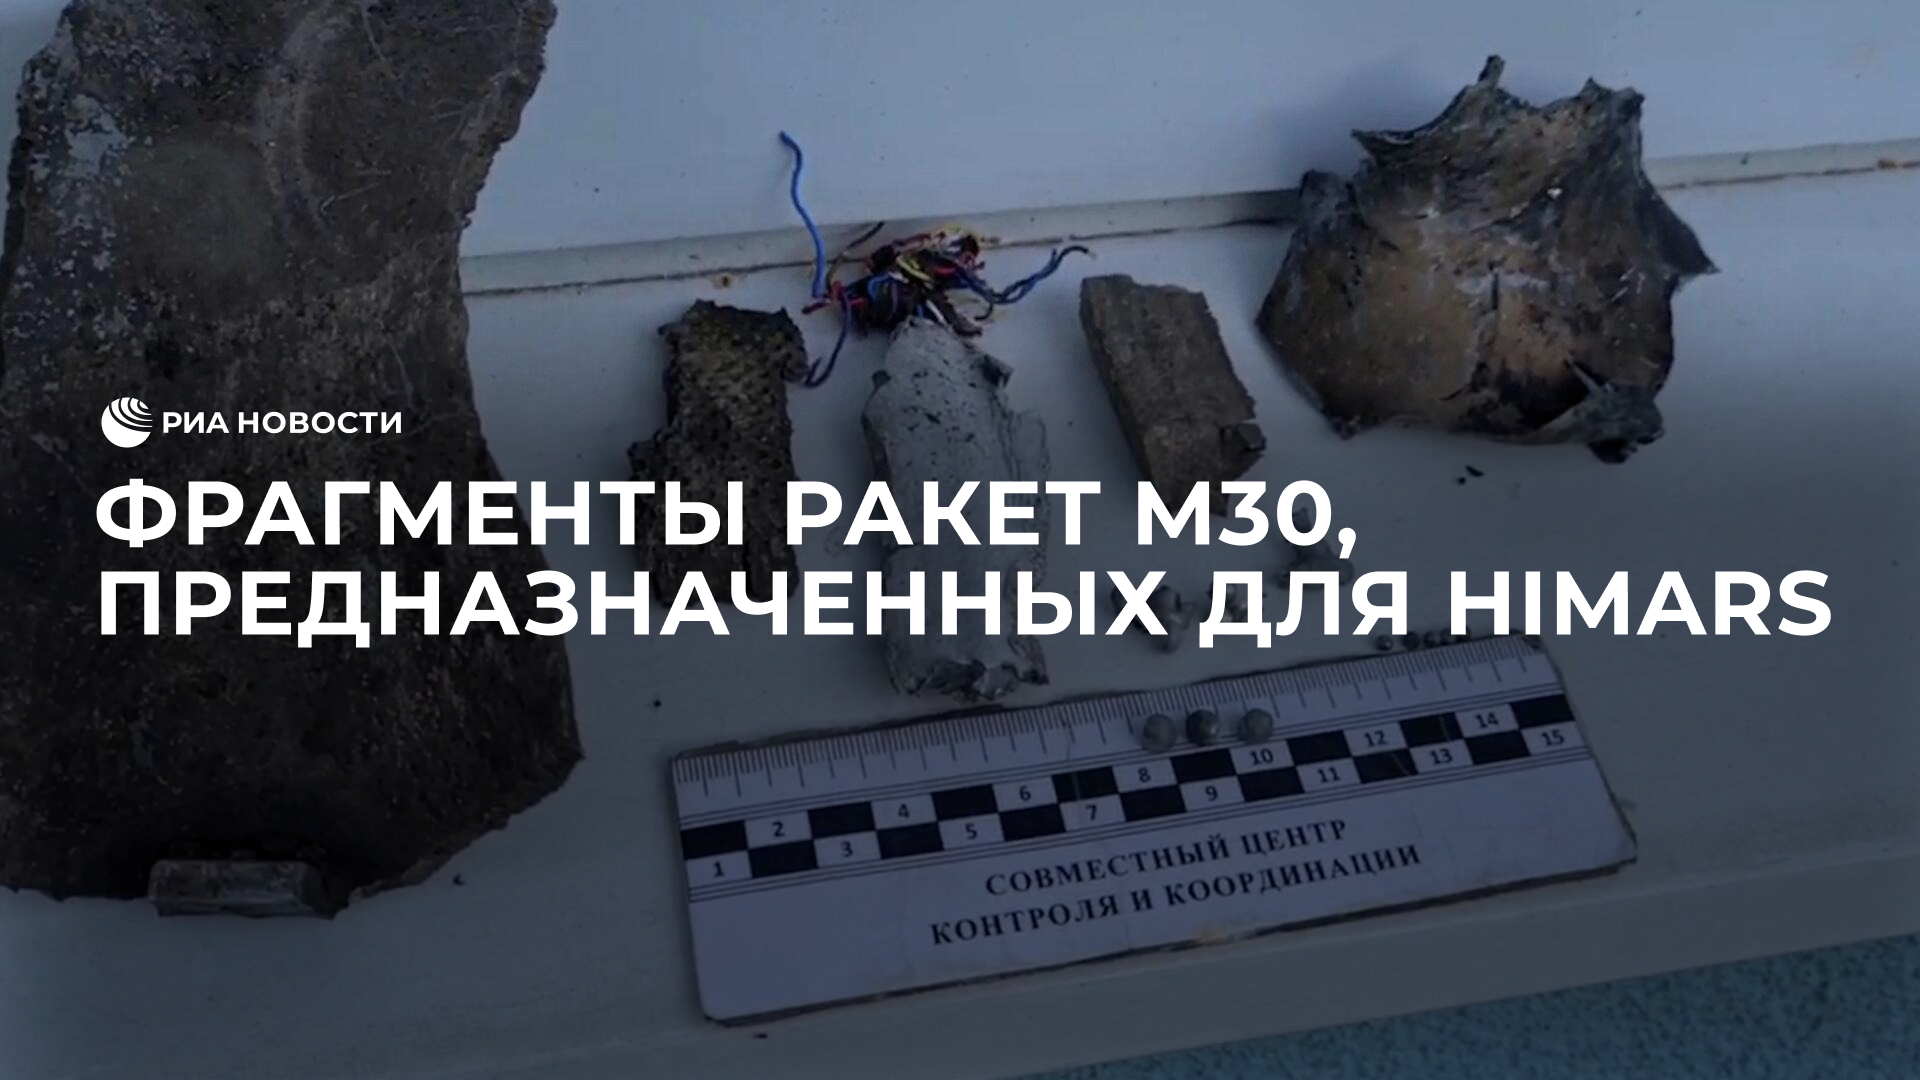 Фрагменты корпуса украинских ракет M30, предназначенных для HIMARS